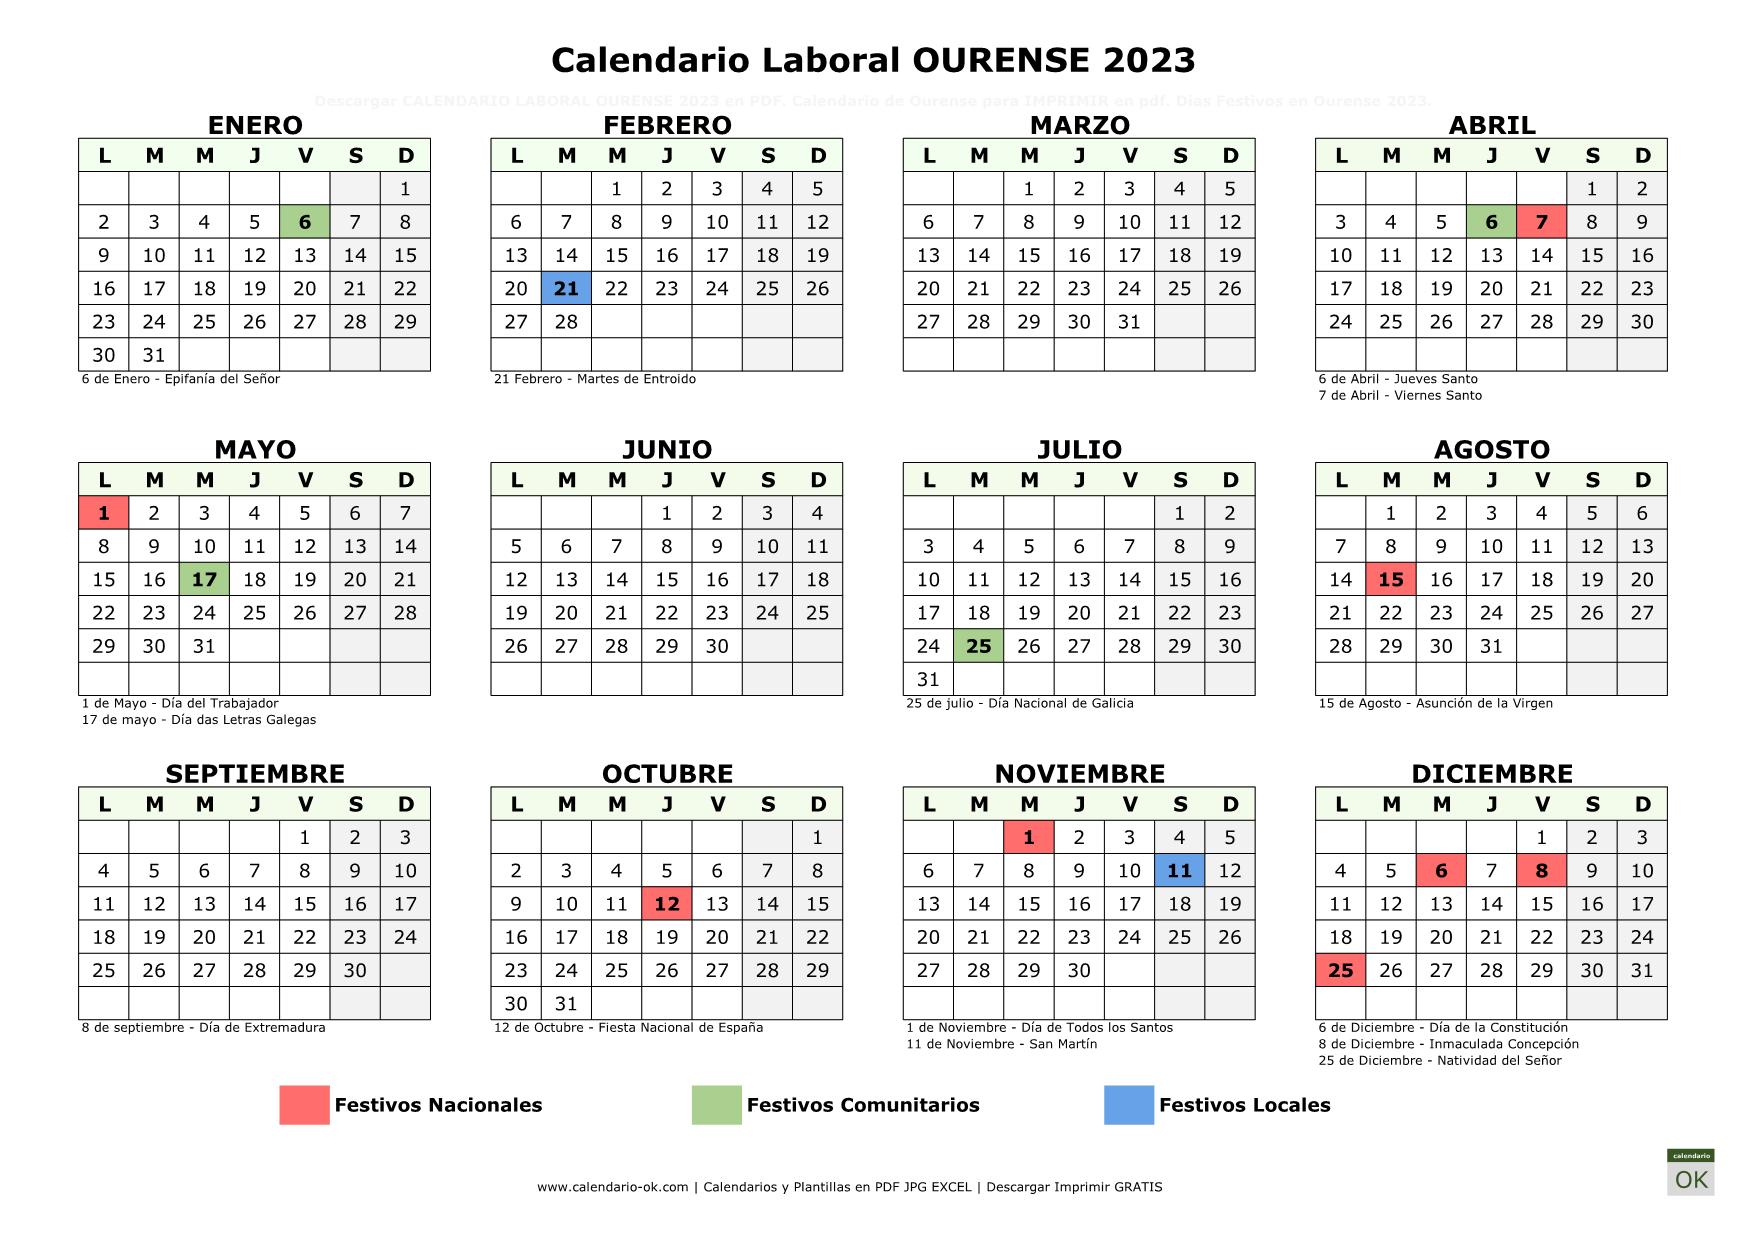 Calendario Laboral Ourense 2023 horizontal